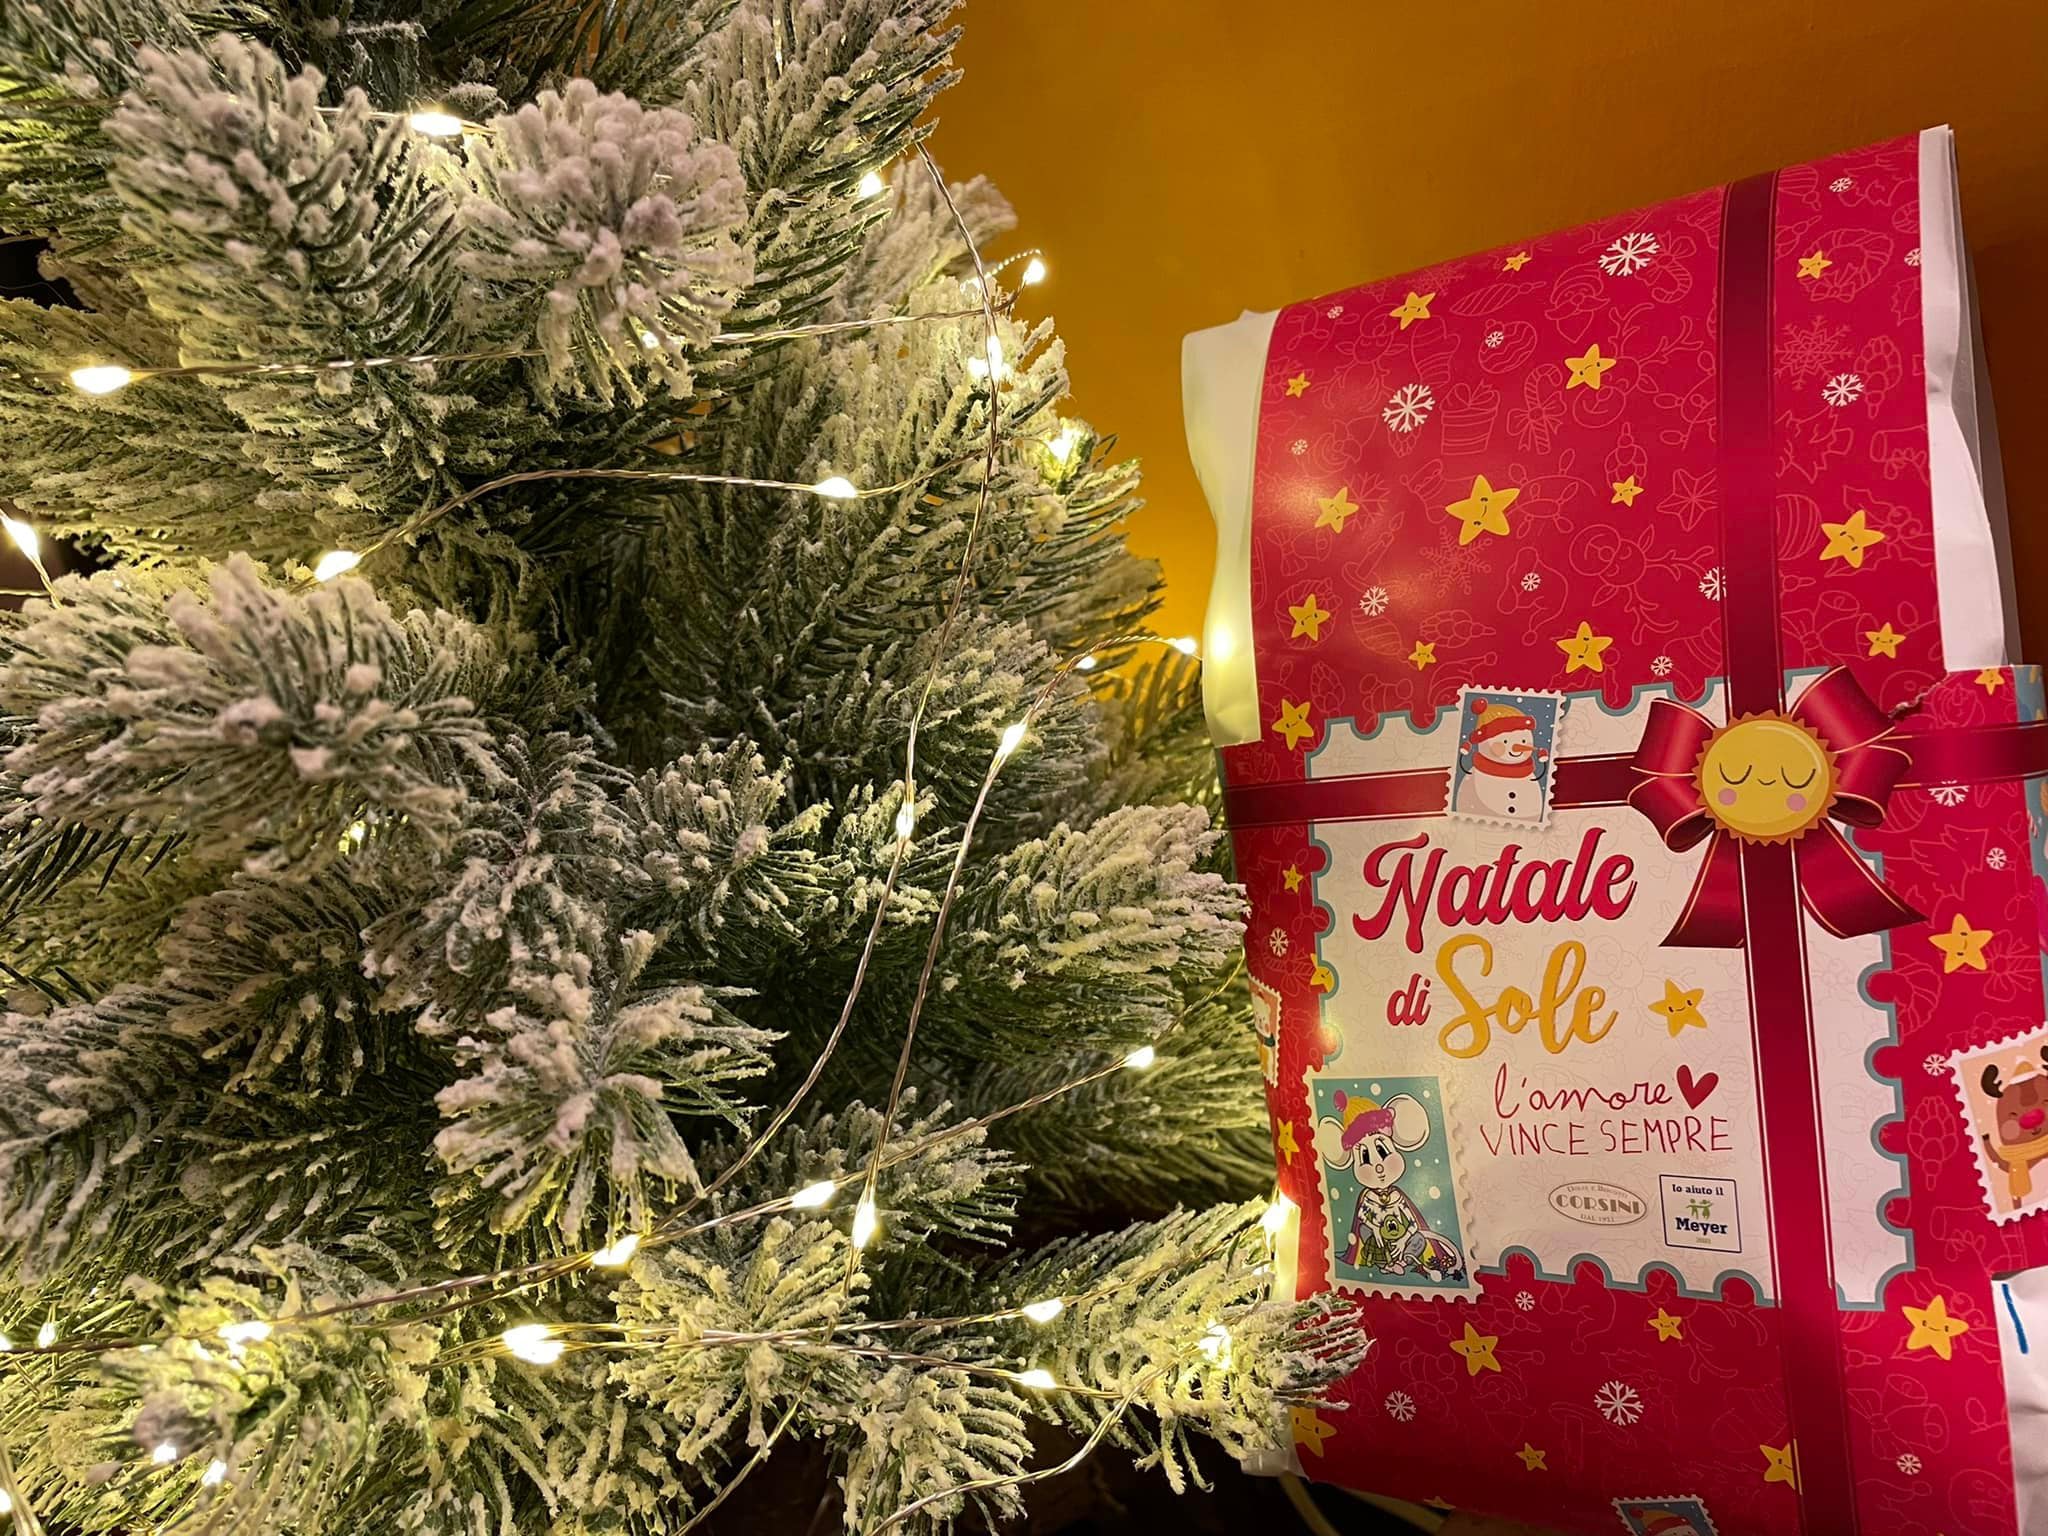 Il Natale di Sole: sotto l’albero una sorpresa di bontà e solidarietà